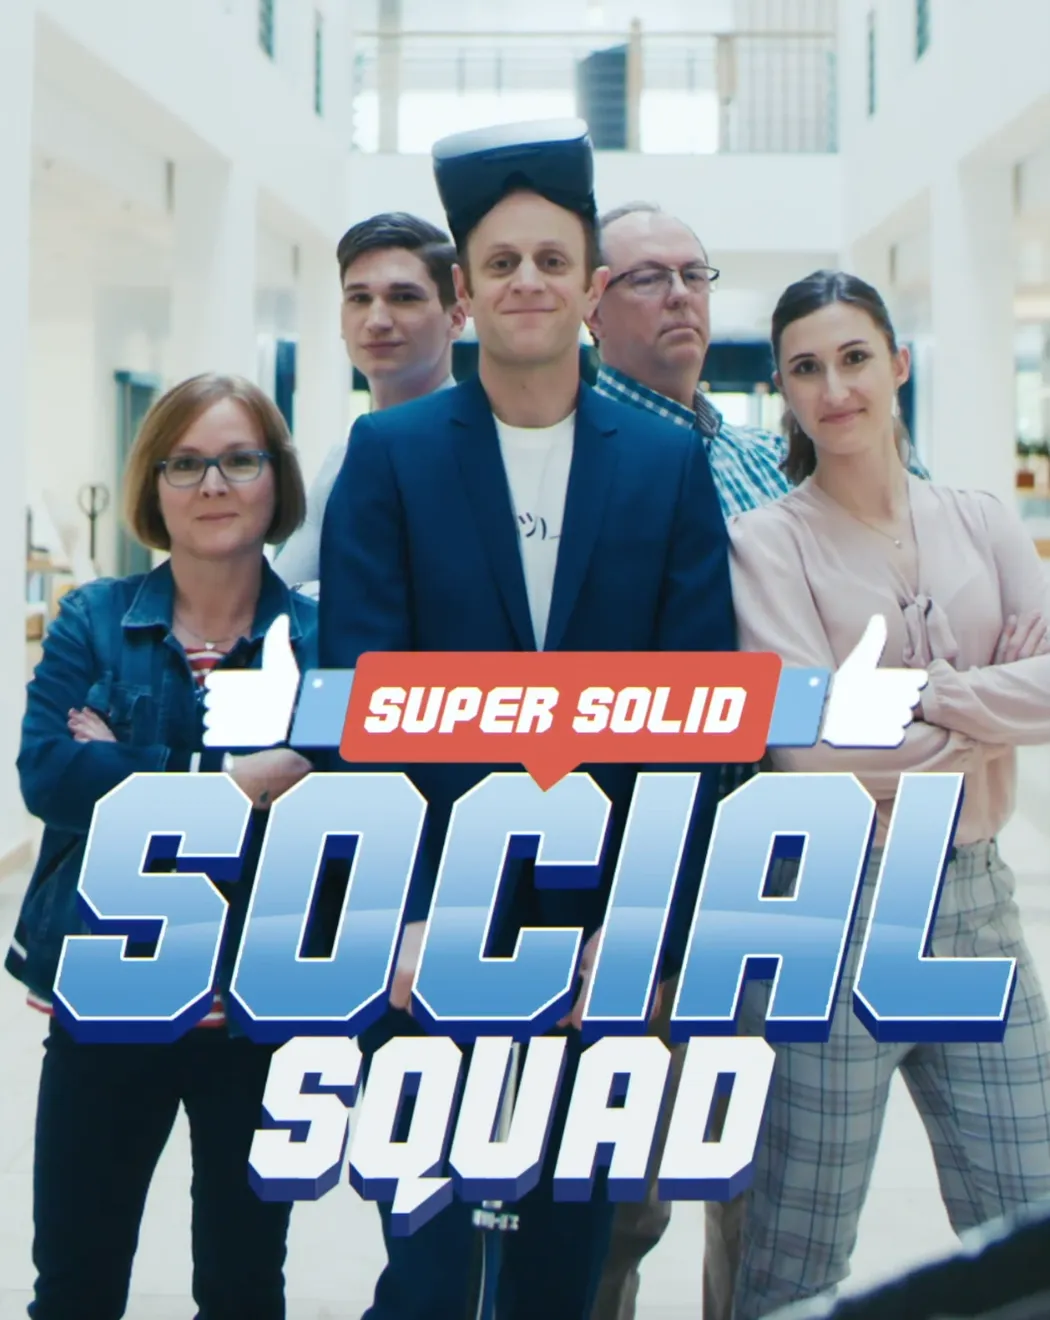 Super Solid Social Squad